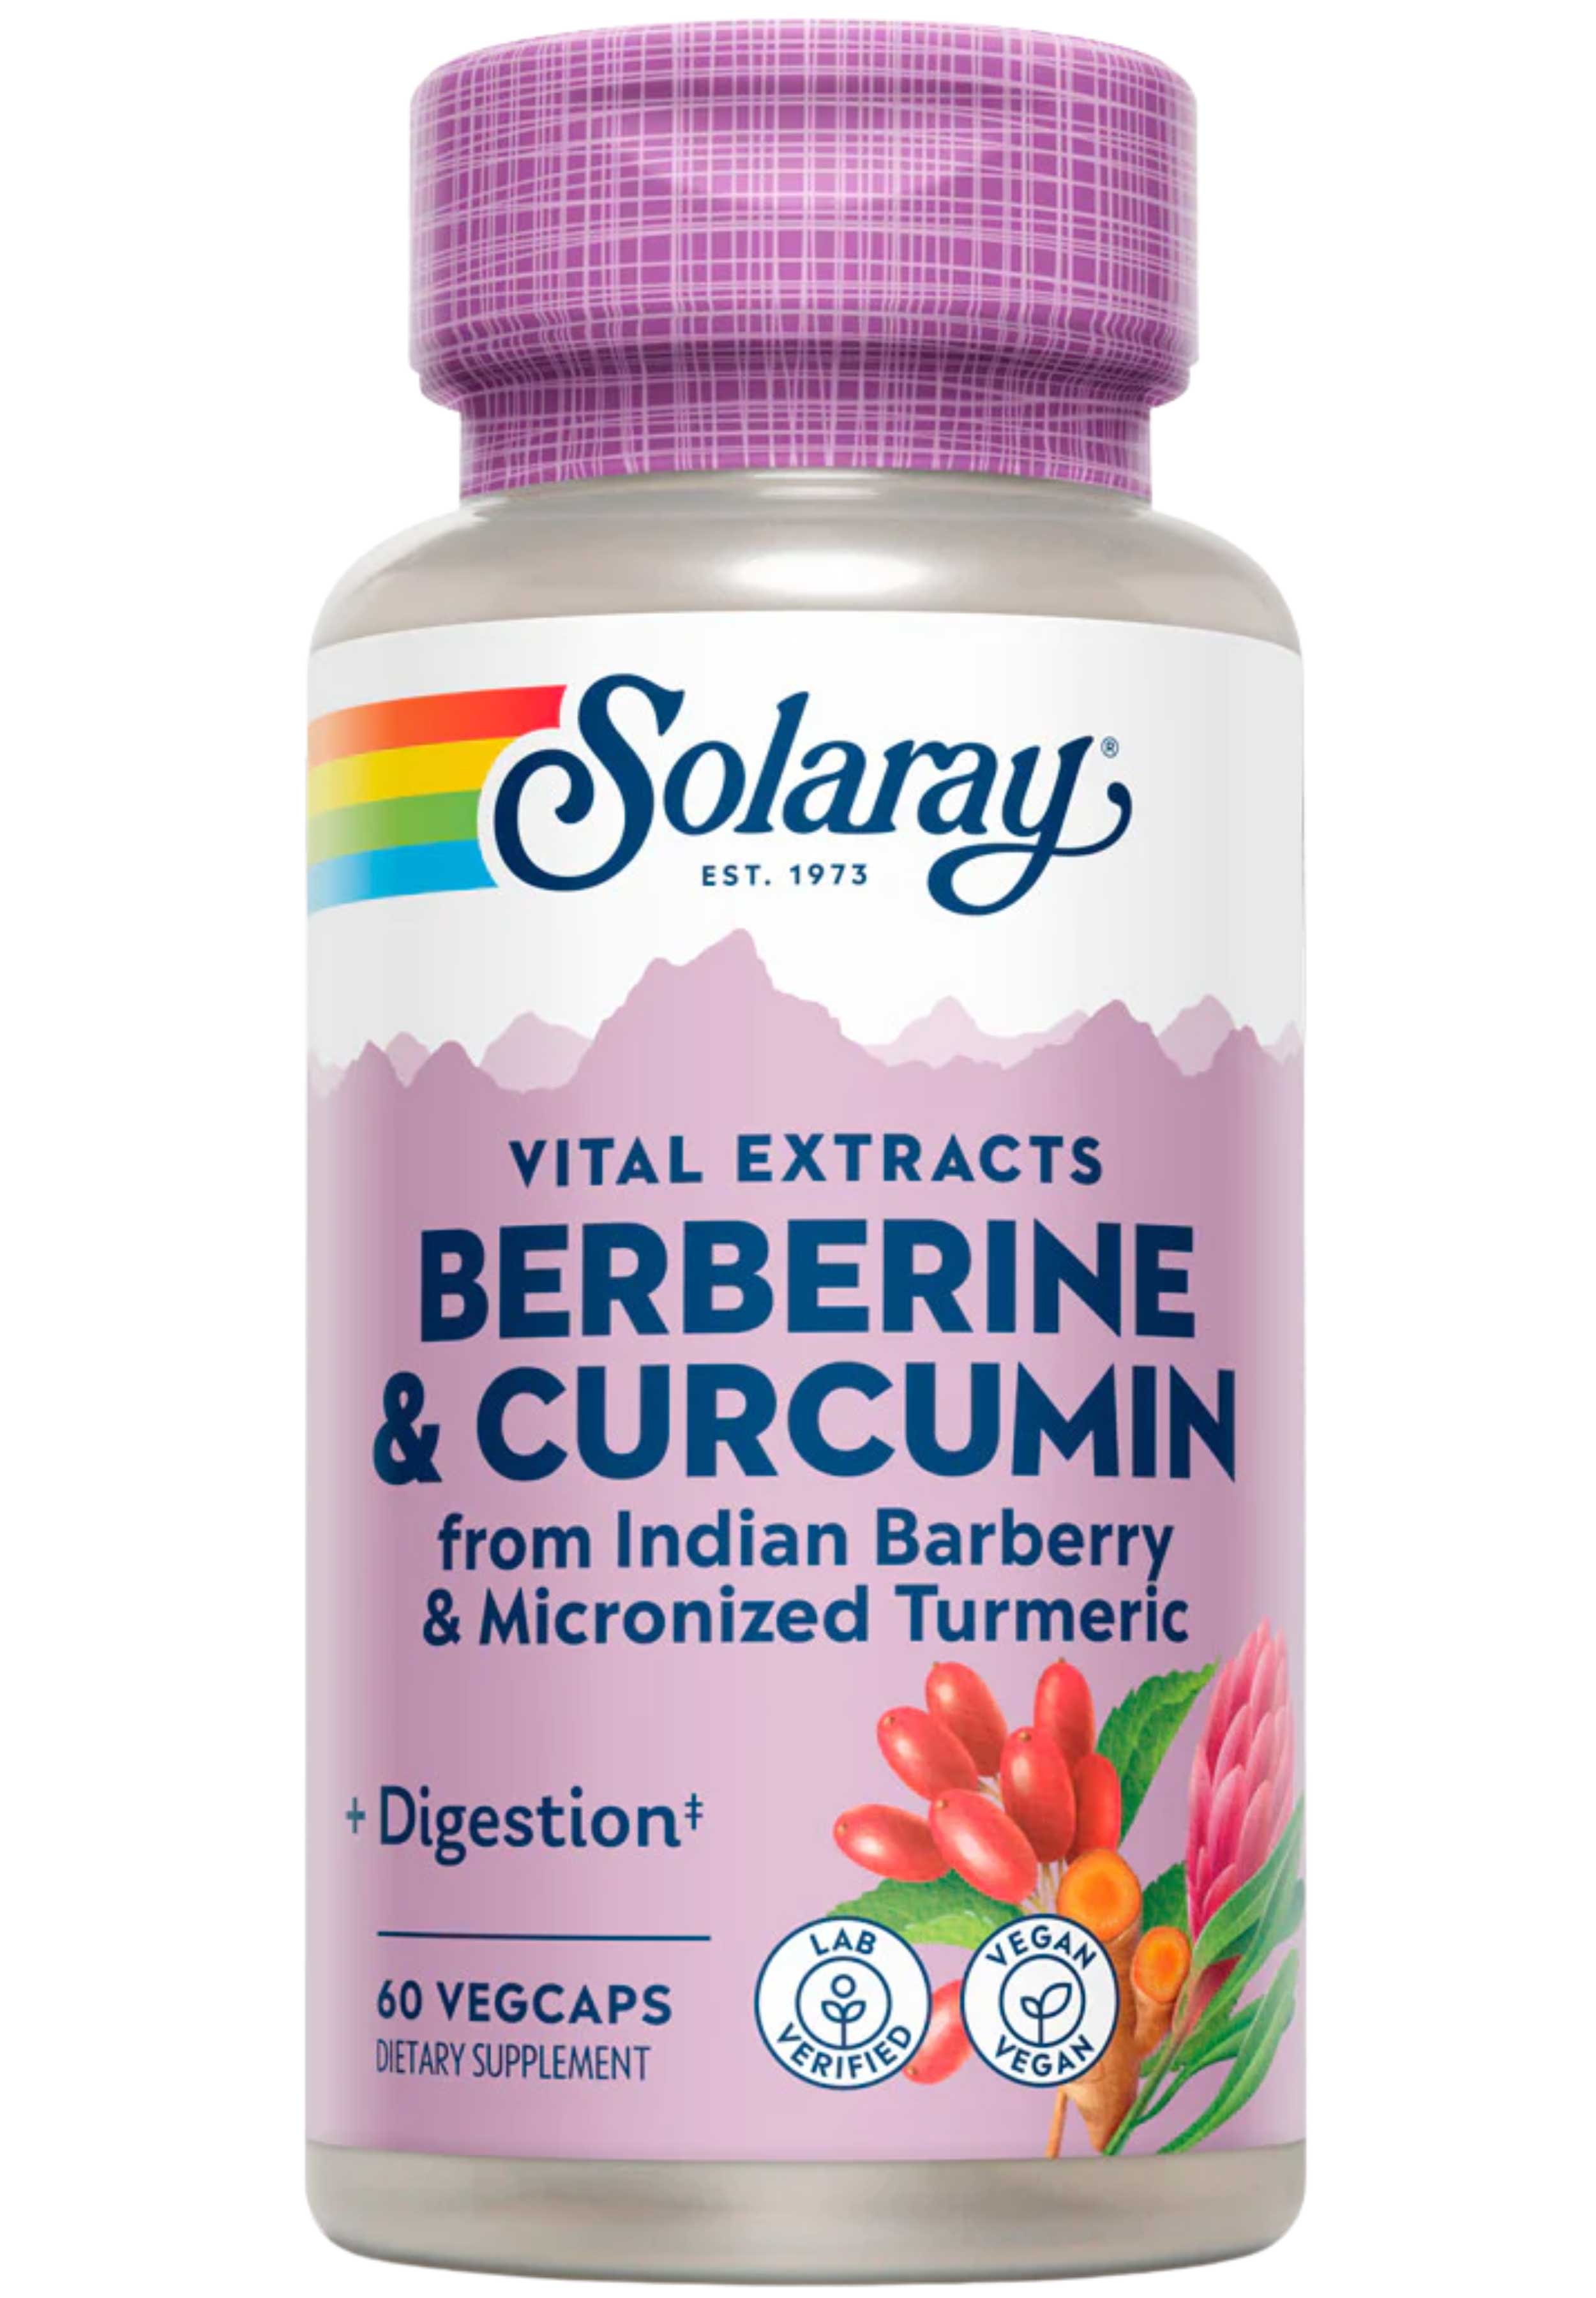 Solaray Berberine & Curcumin Vital Extracts